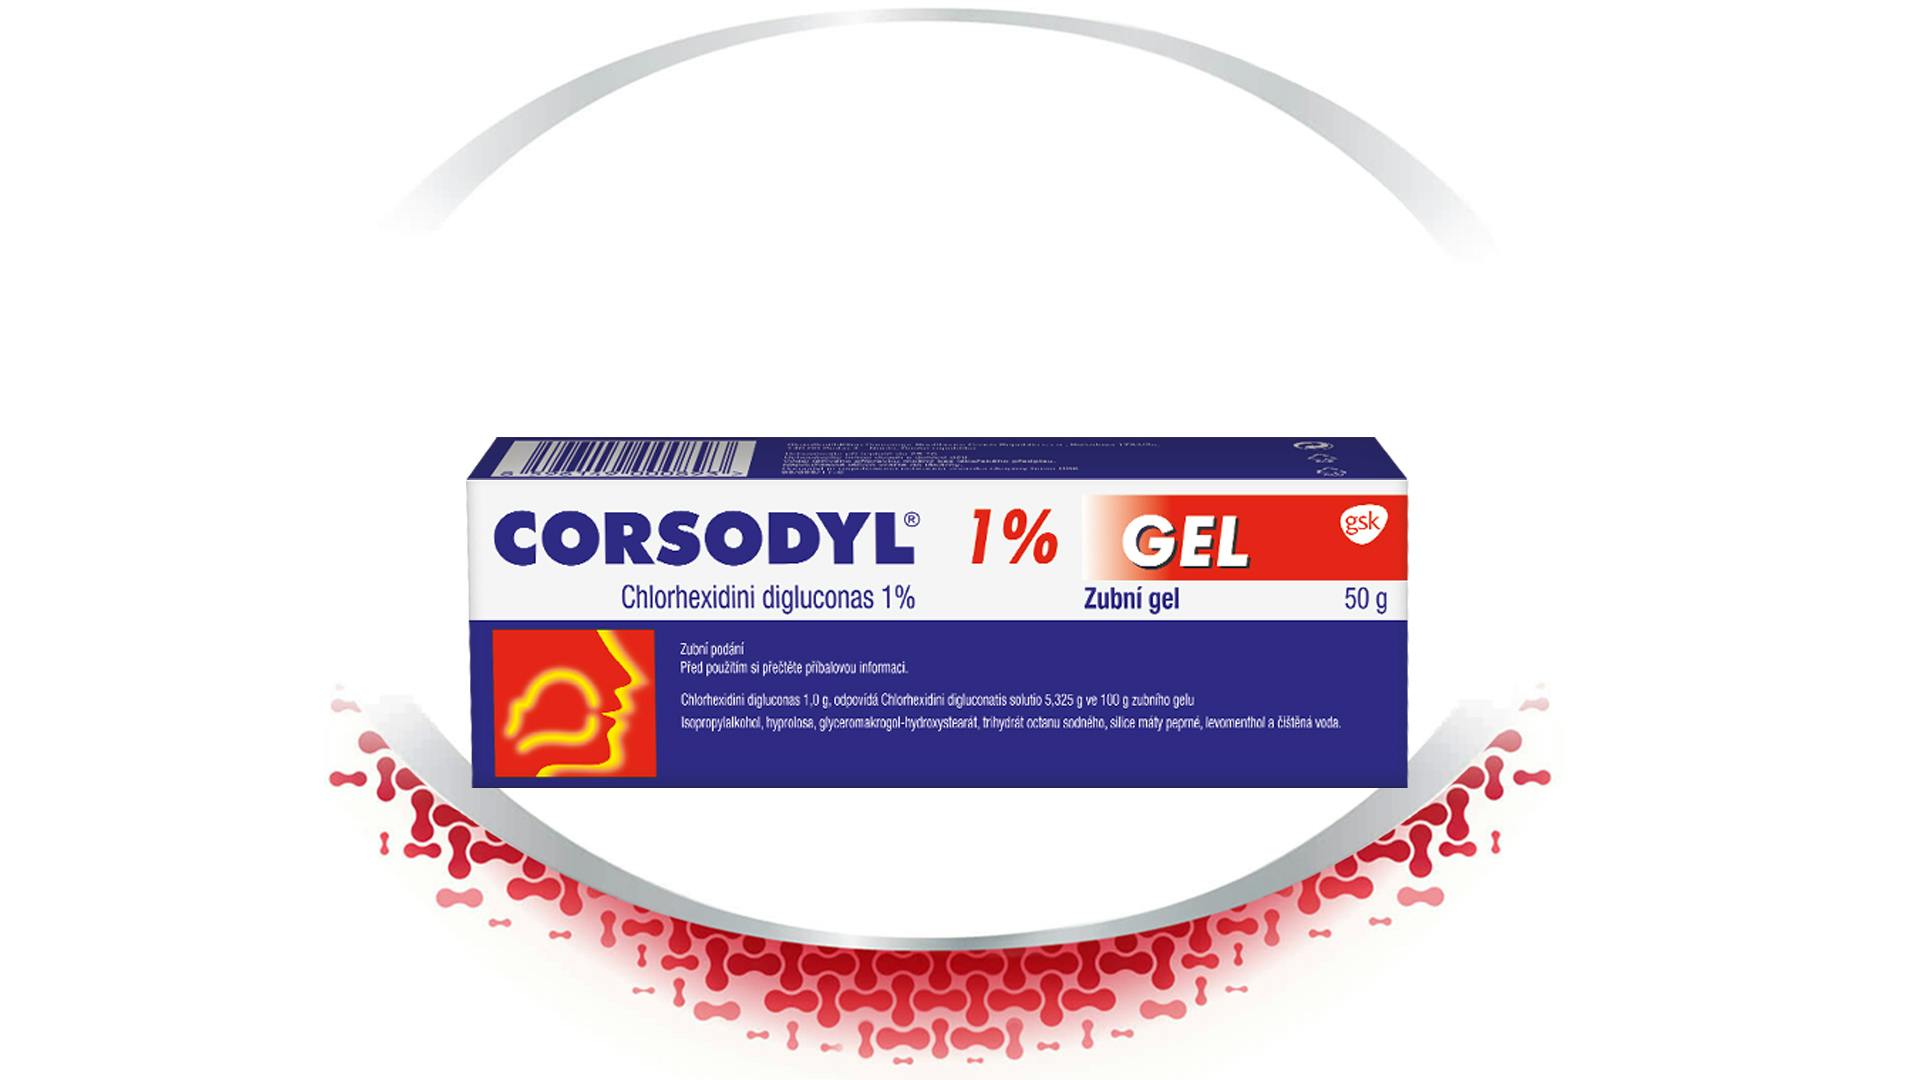 Produkty Corsodyl pro intenzivní ochranu dásní